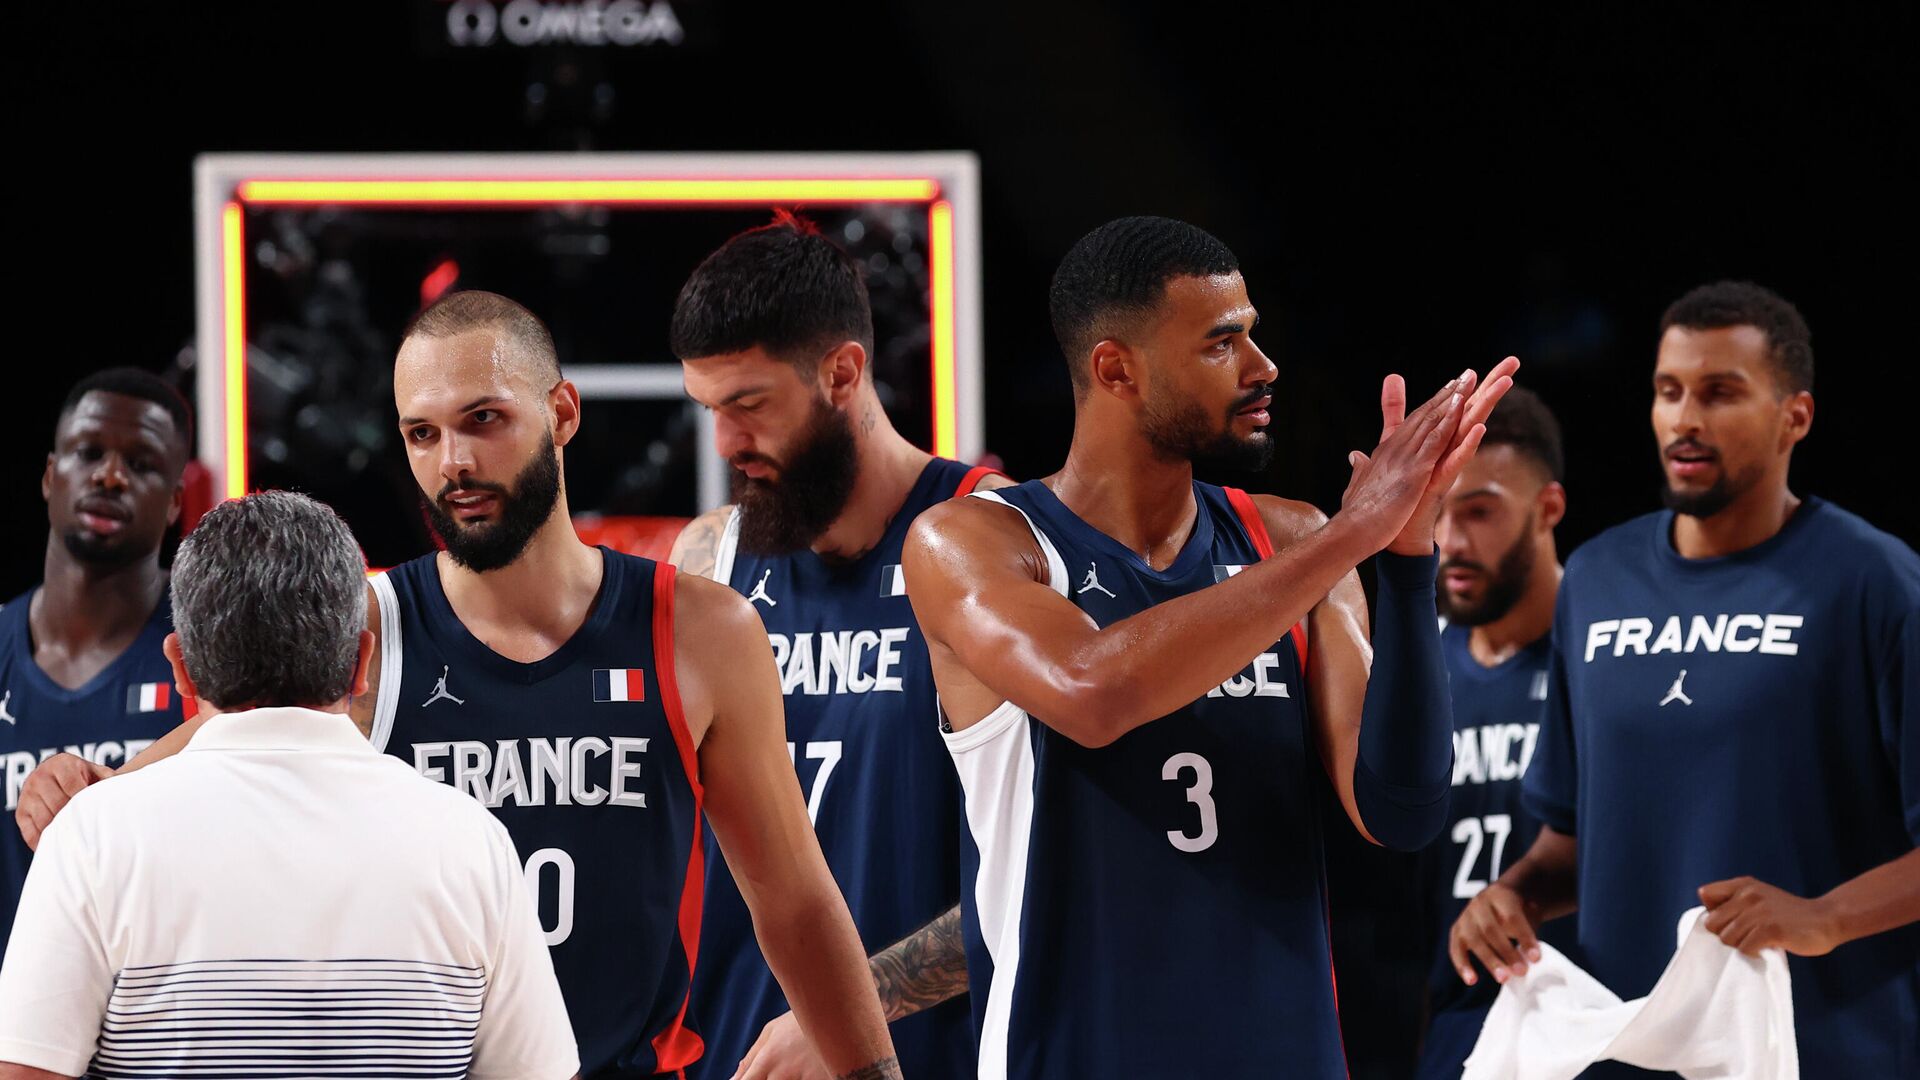 Франция - Чехия. Прогноз и ставки на баскетбол. 24 августа 2022 года